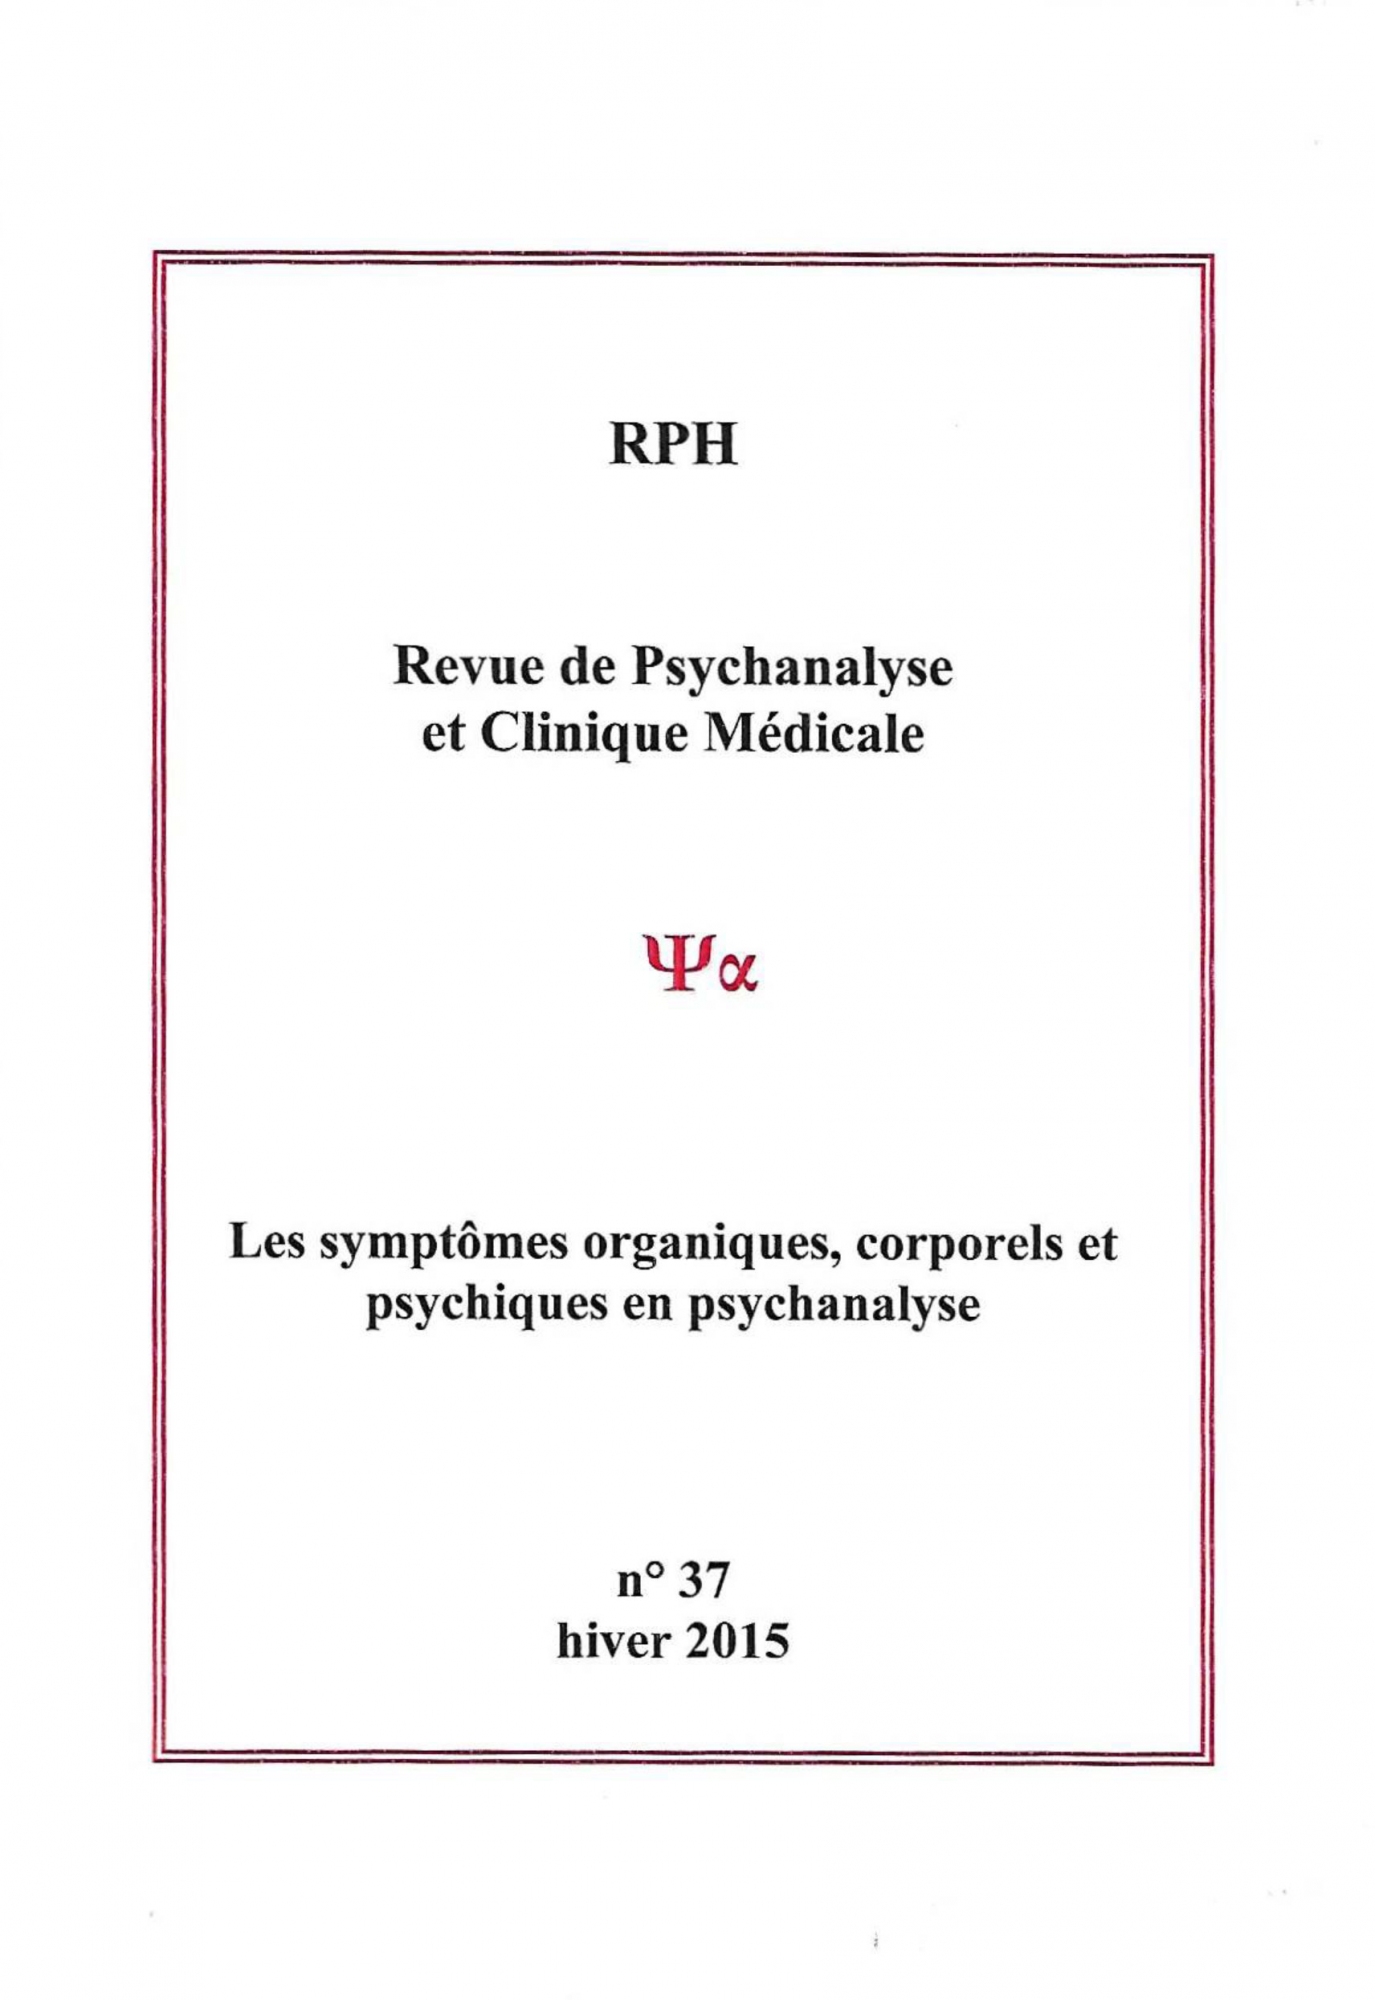 Consulter articles de psychanalyse proche Paris